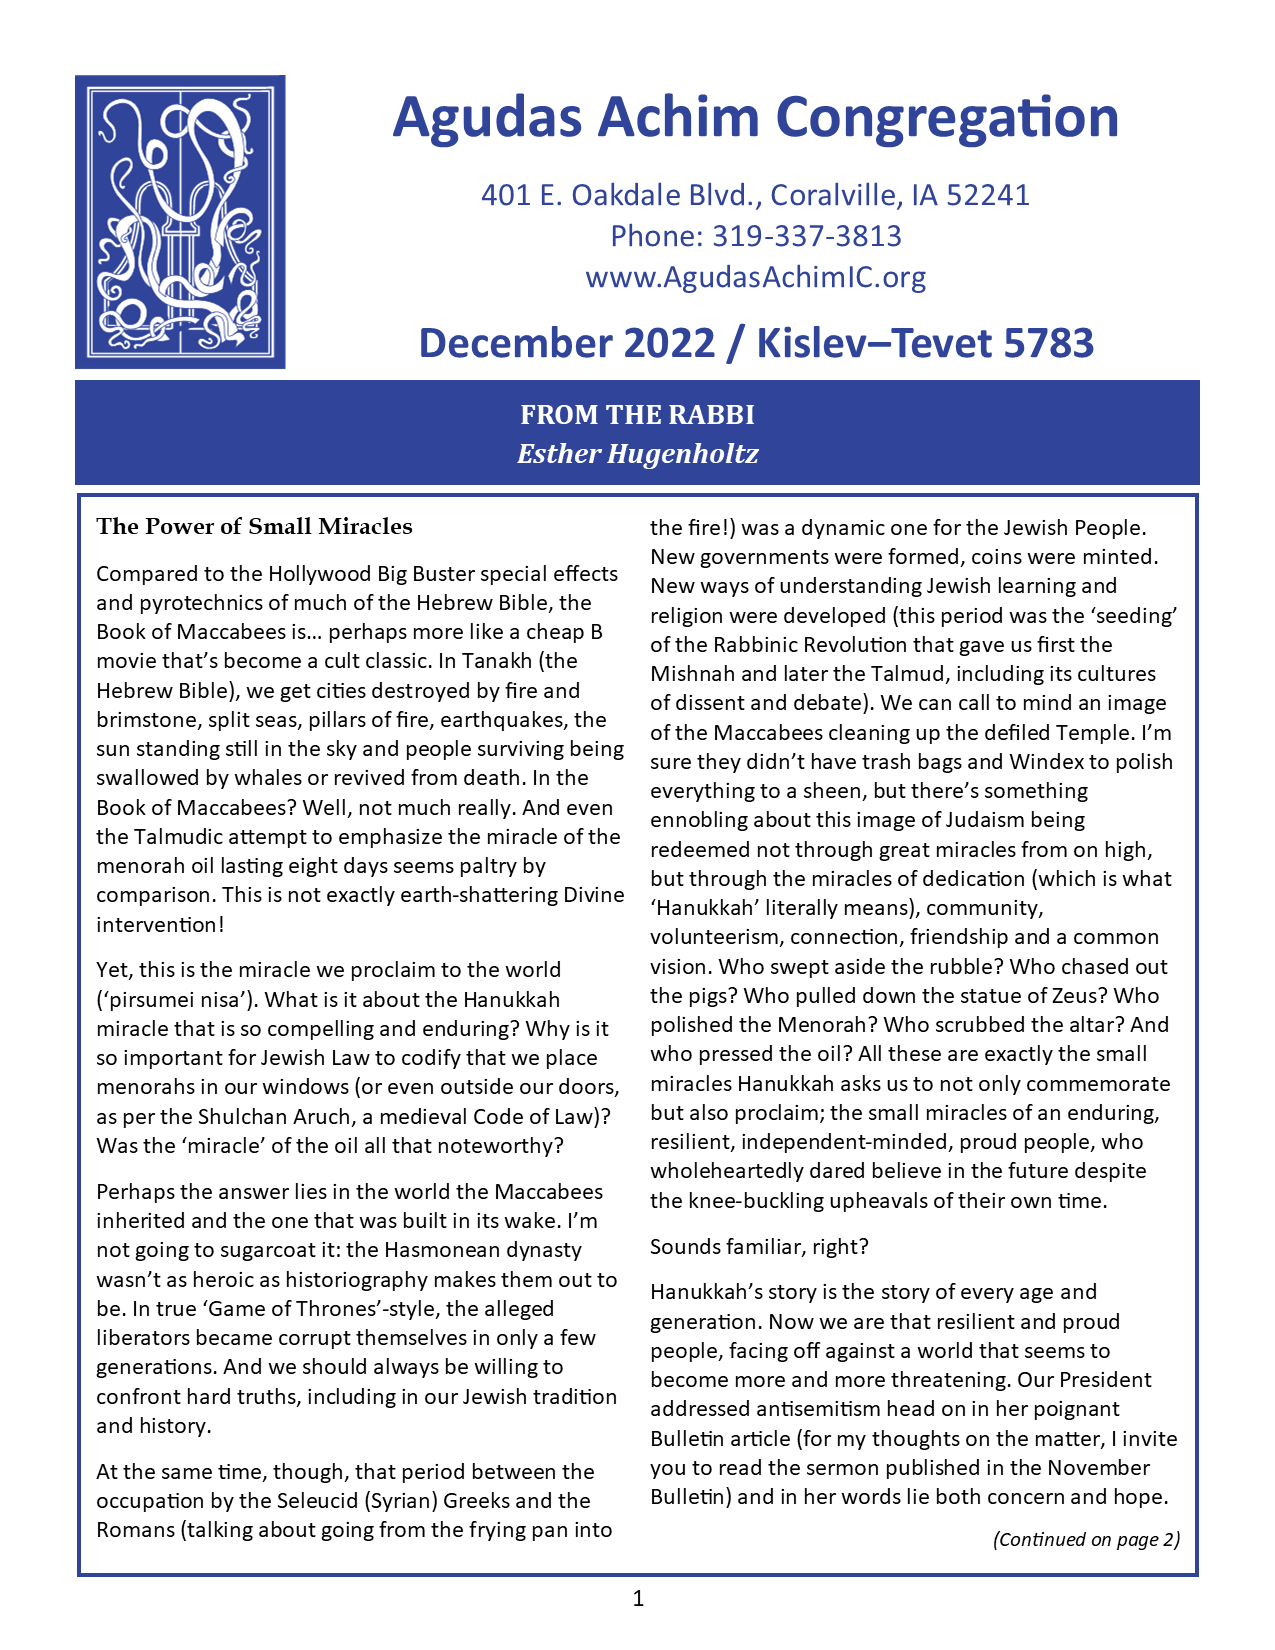 December  2022 Bulletin